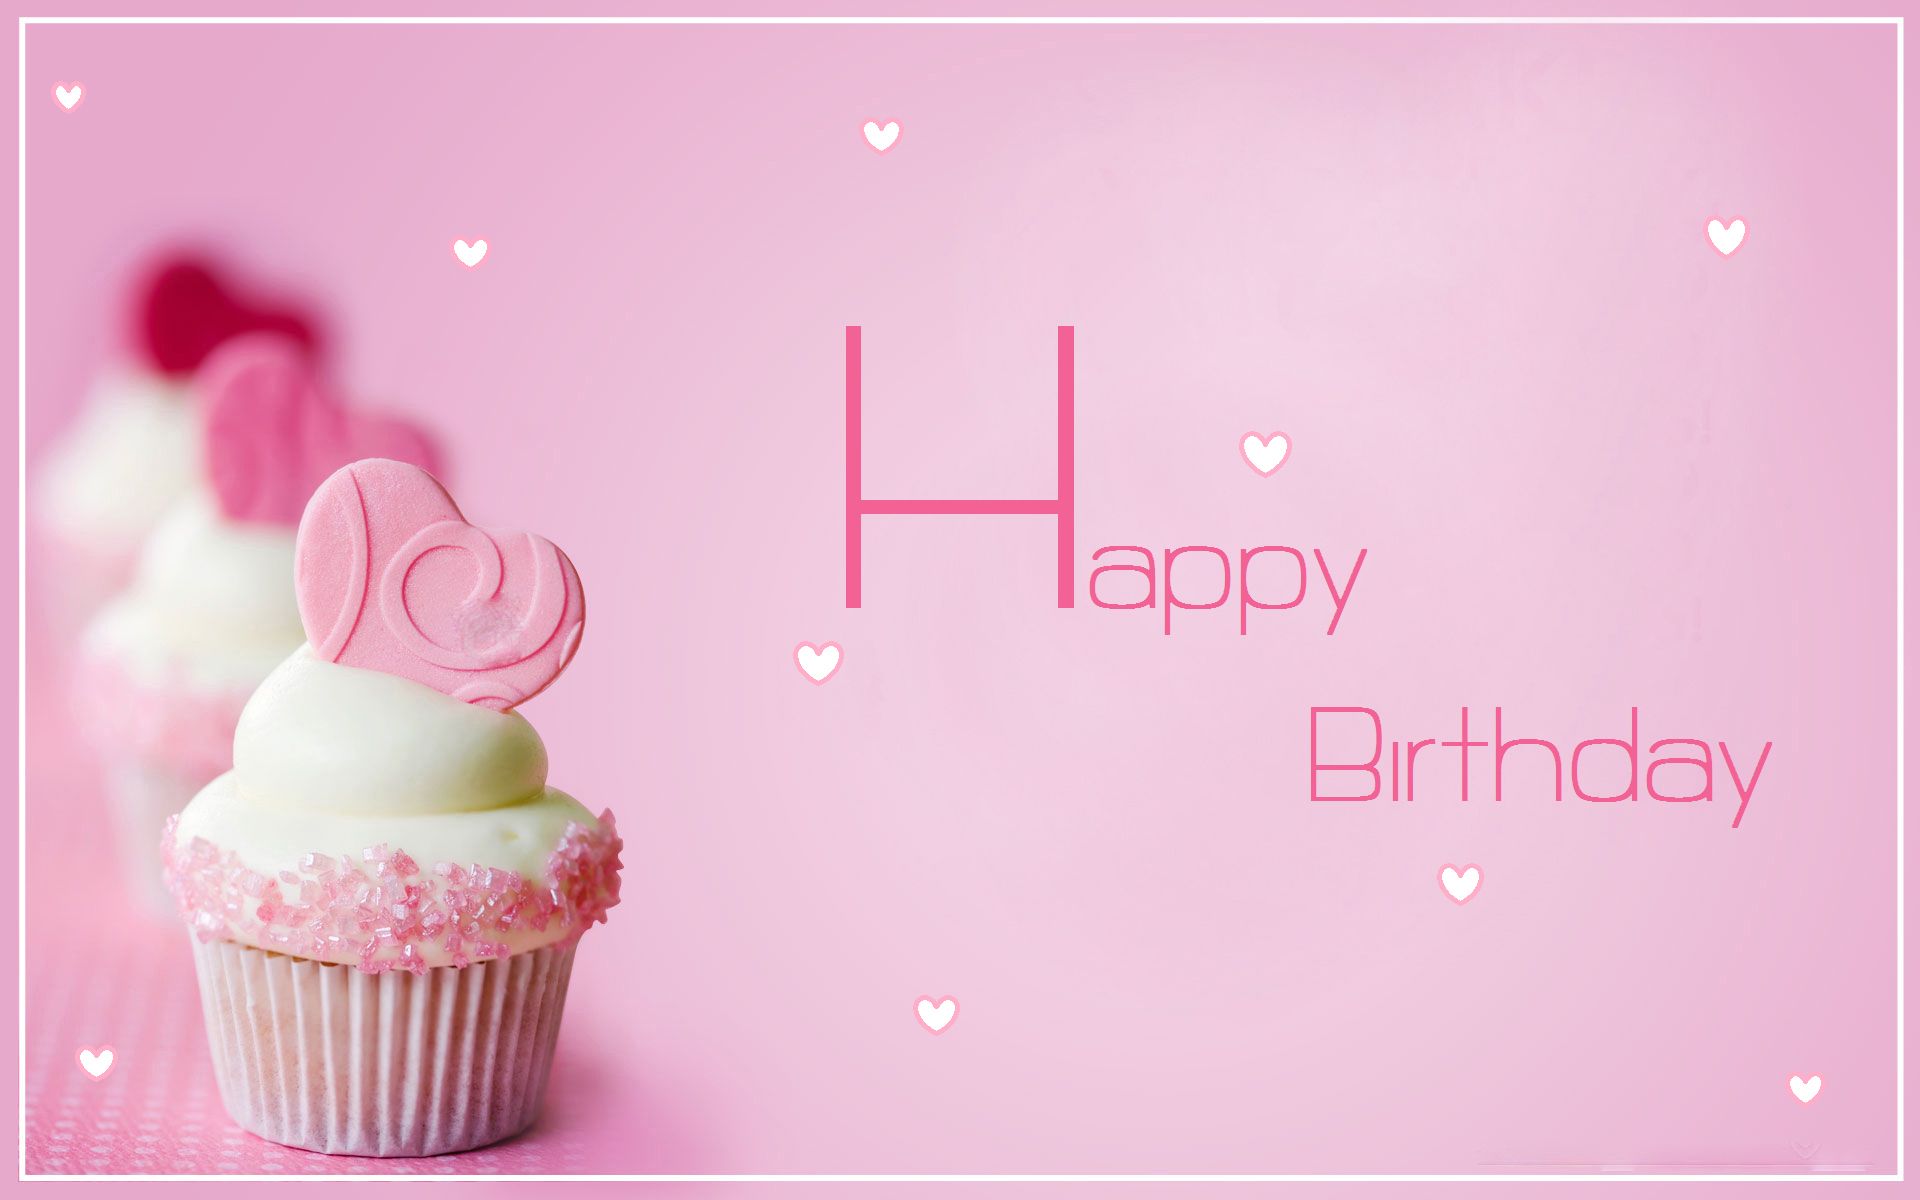 Happy birthday cupcakes .com